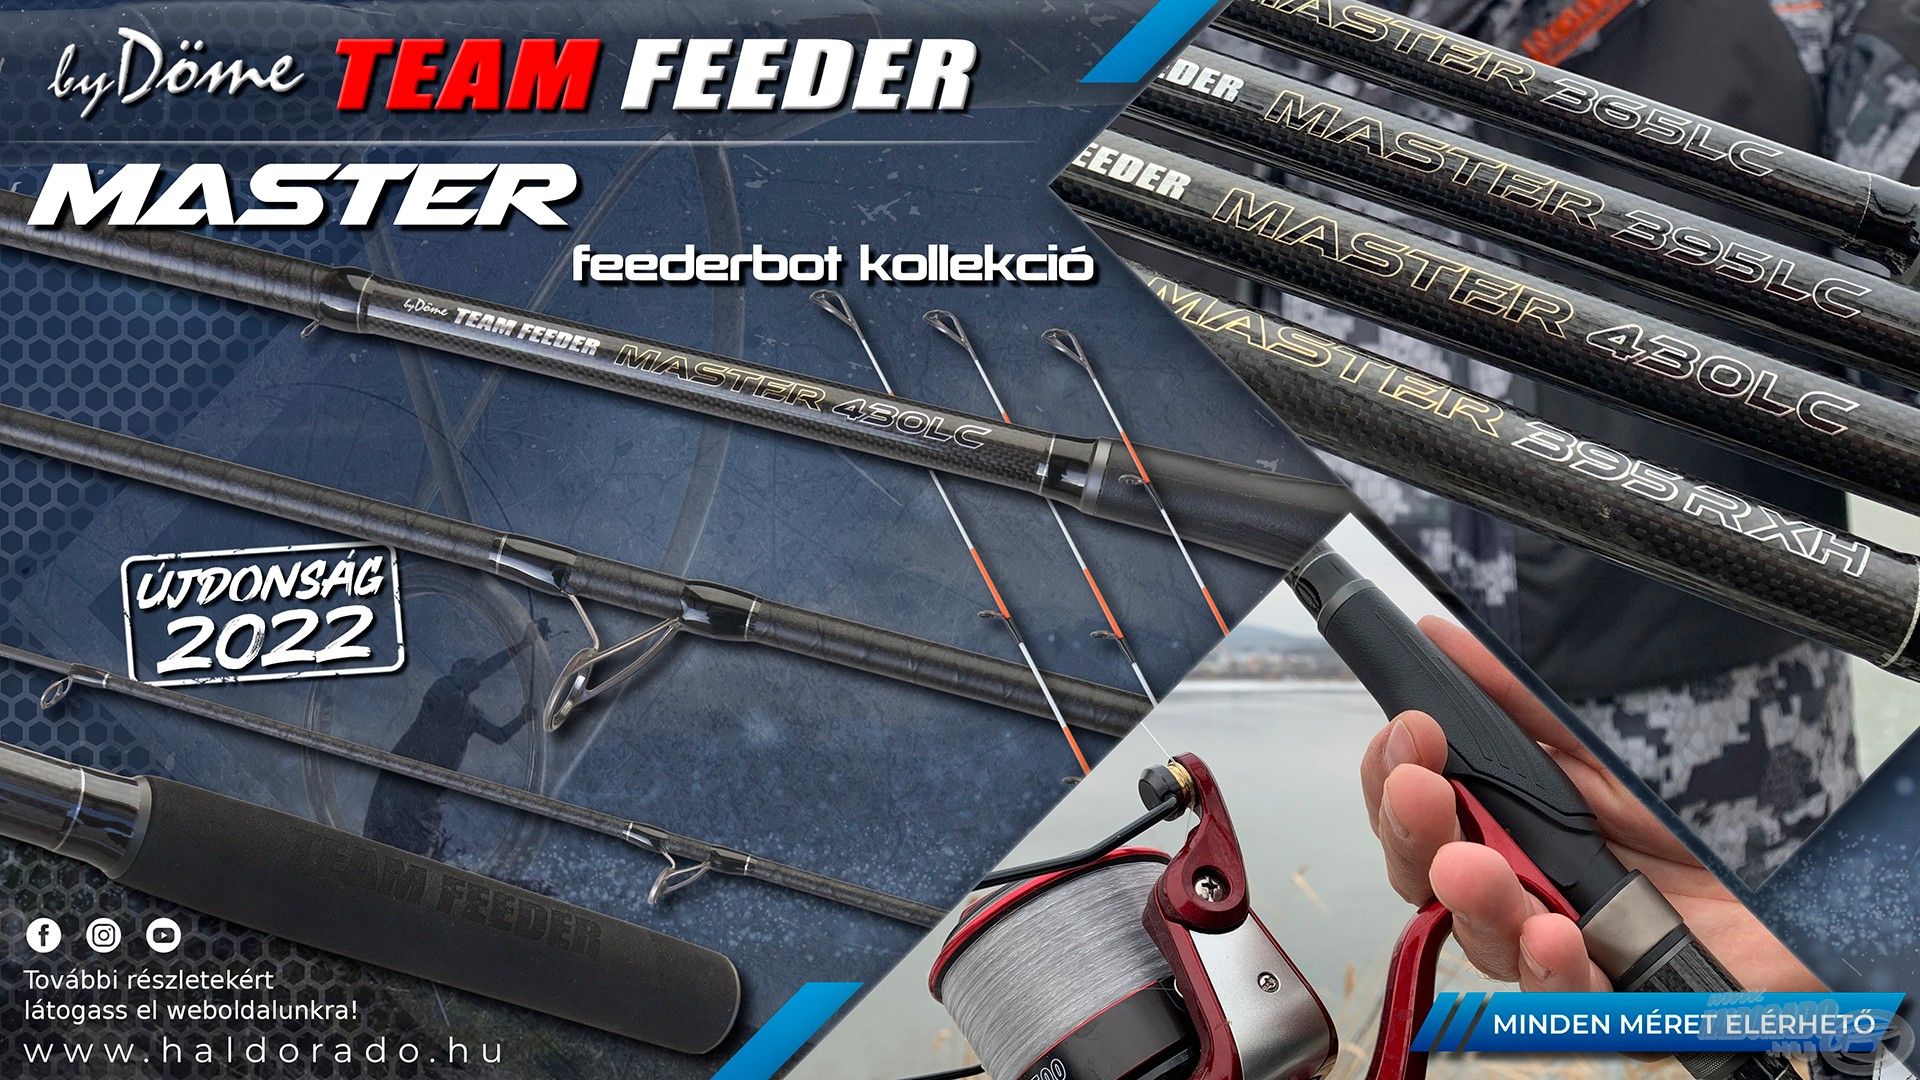 Minden By Döme TEAM FEEDER bot megtalálható lesz a standunknál, köztük a Master! A legnépszerűbb feederbot kollekciónk továbbfejlesztett változata összesen 4 új méretben érhető el